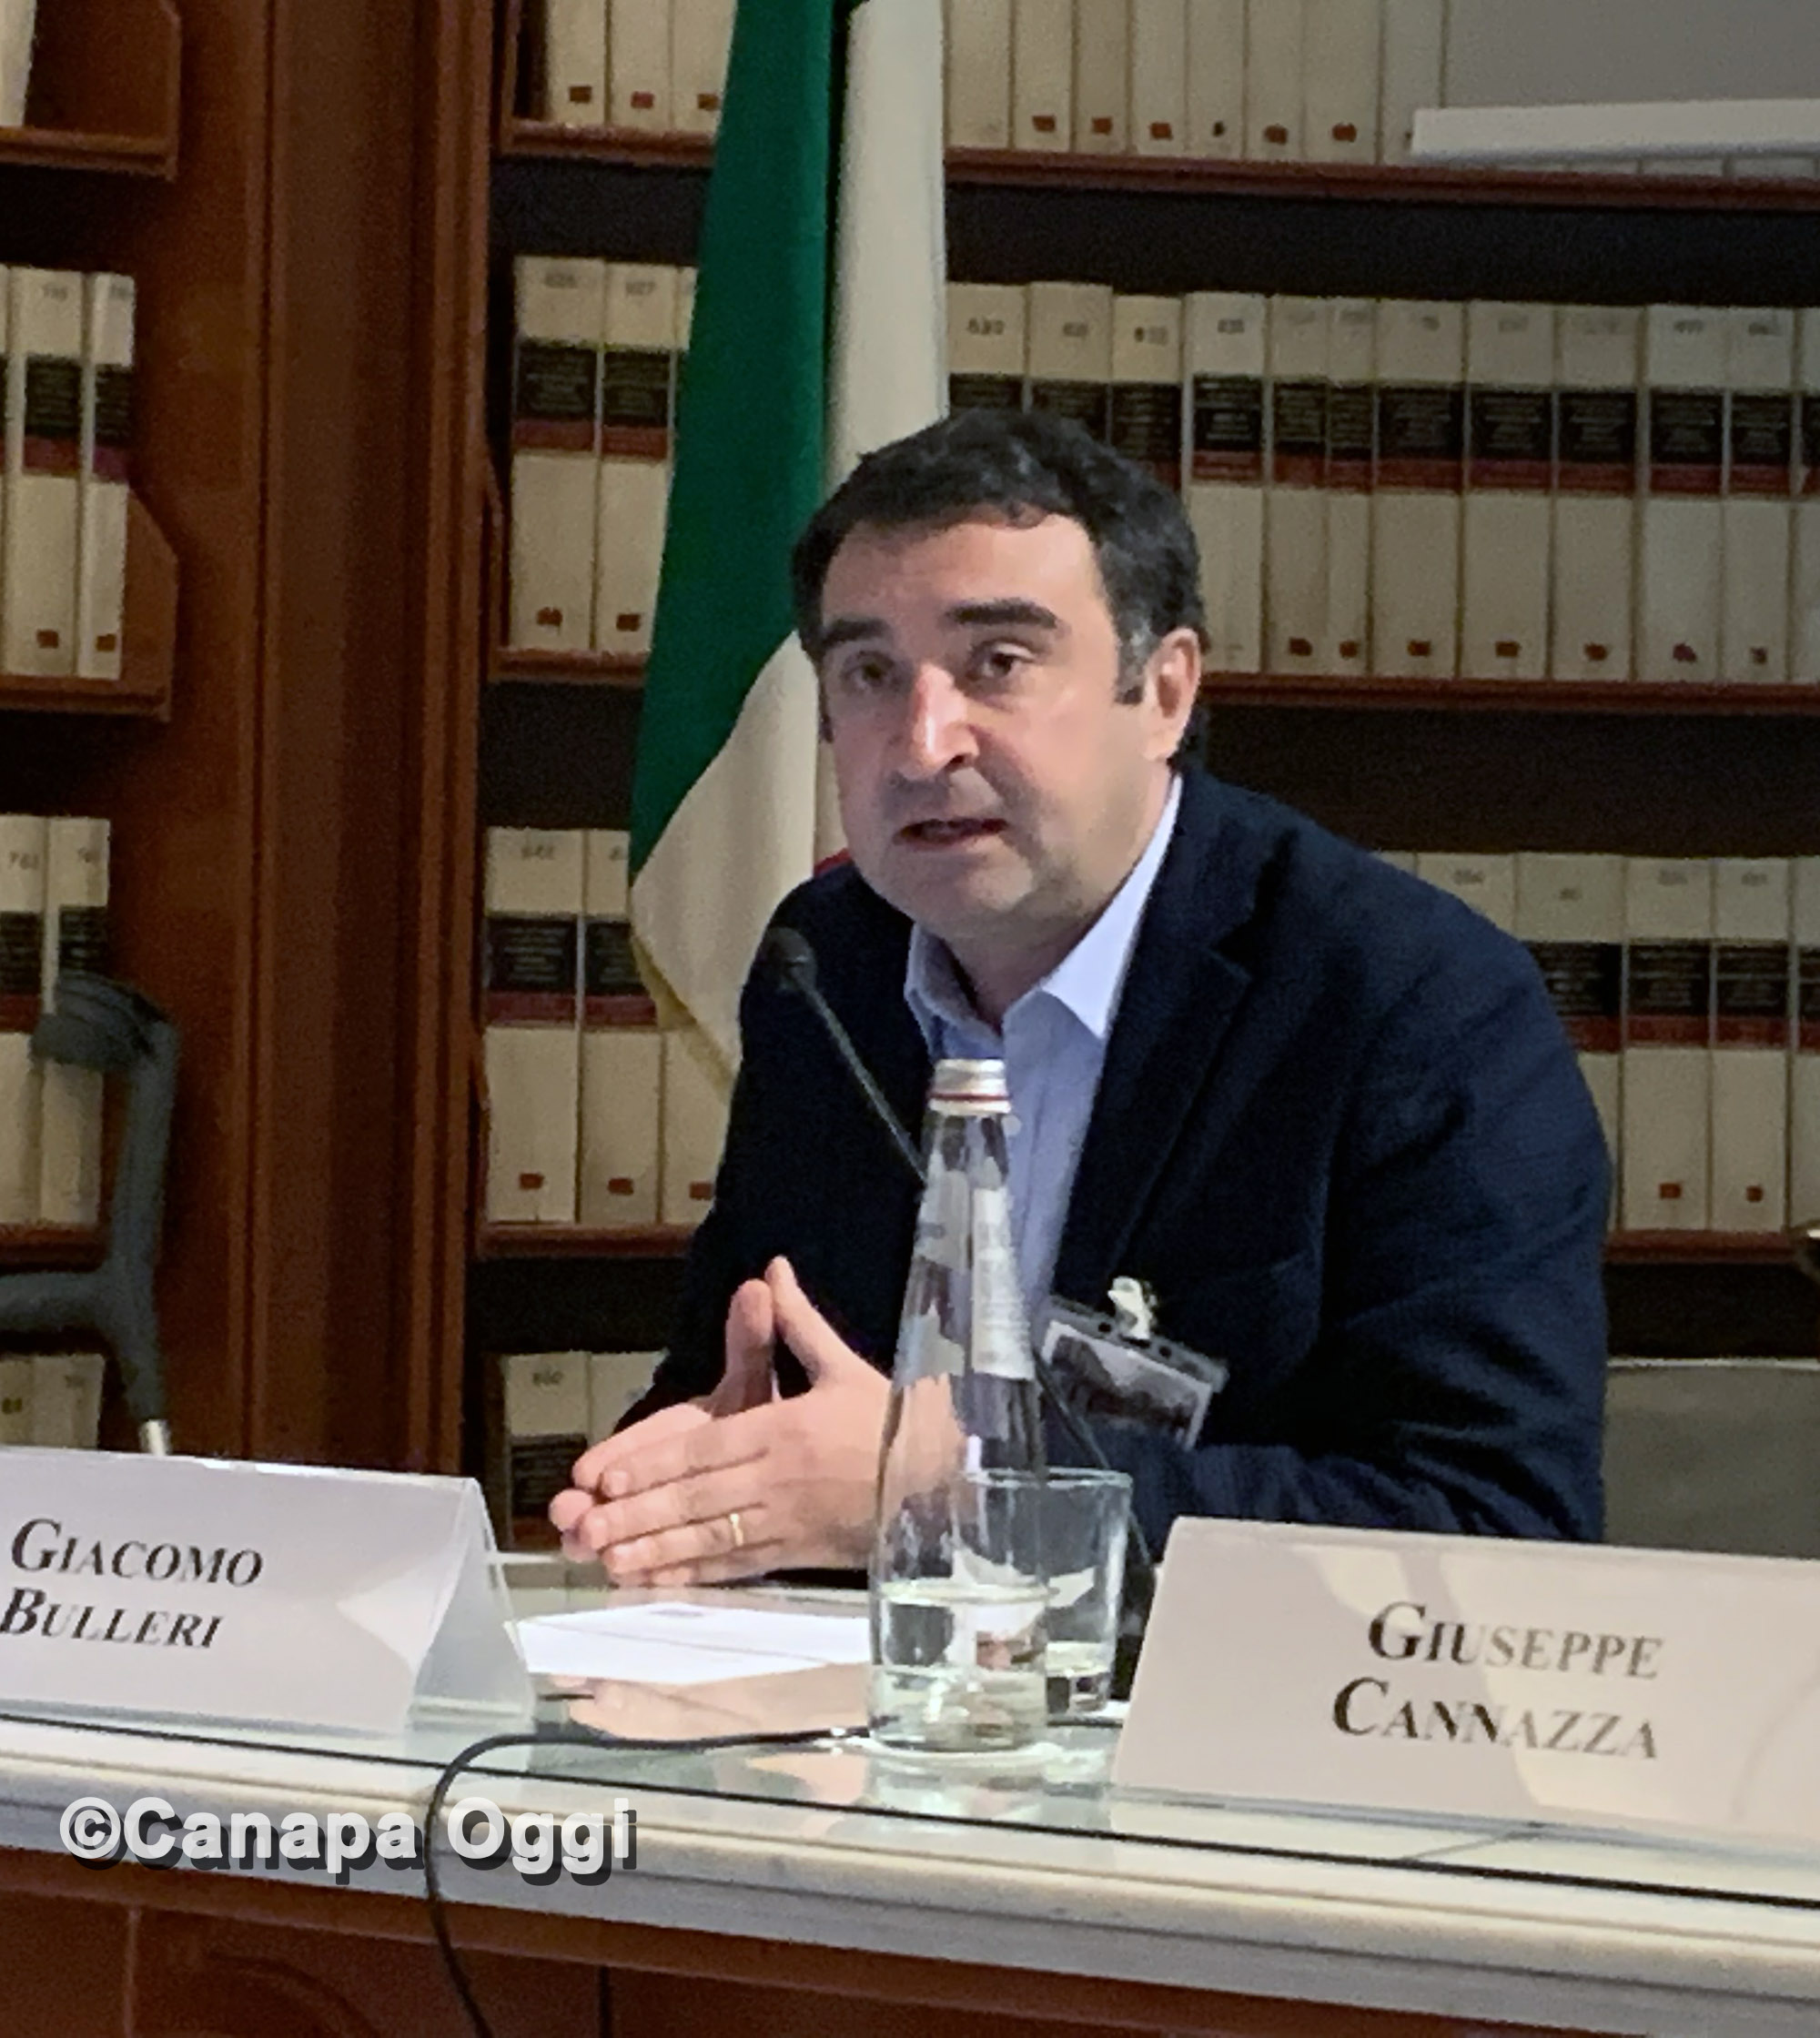 Federcanapa e la necessità di una svolta della politica nazionale sulla Canapa, avvocato Giacomo Bulleri